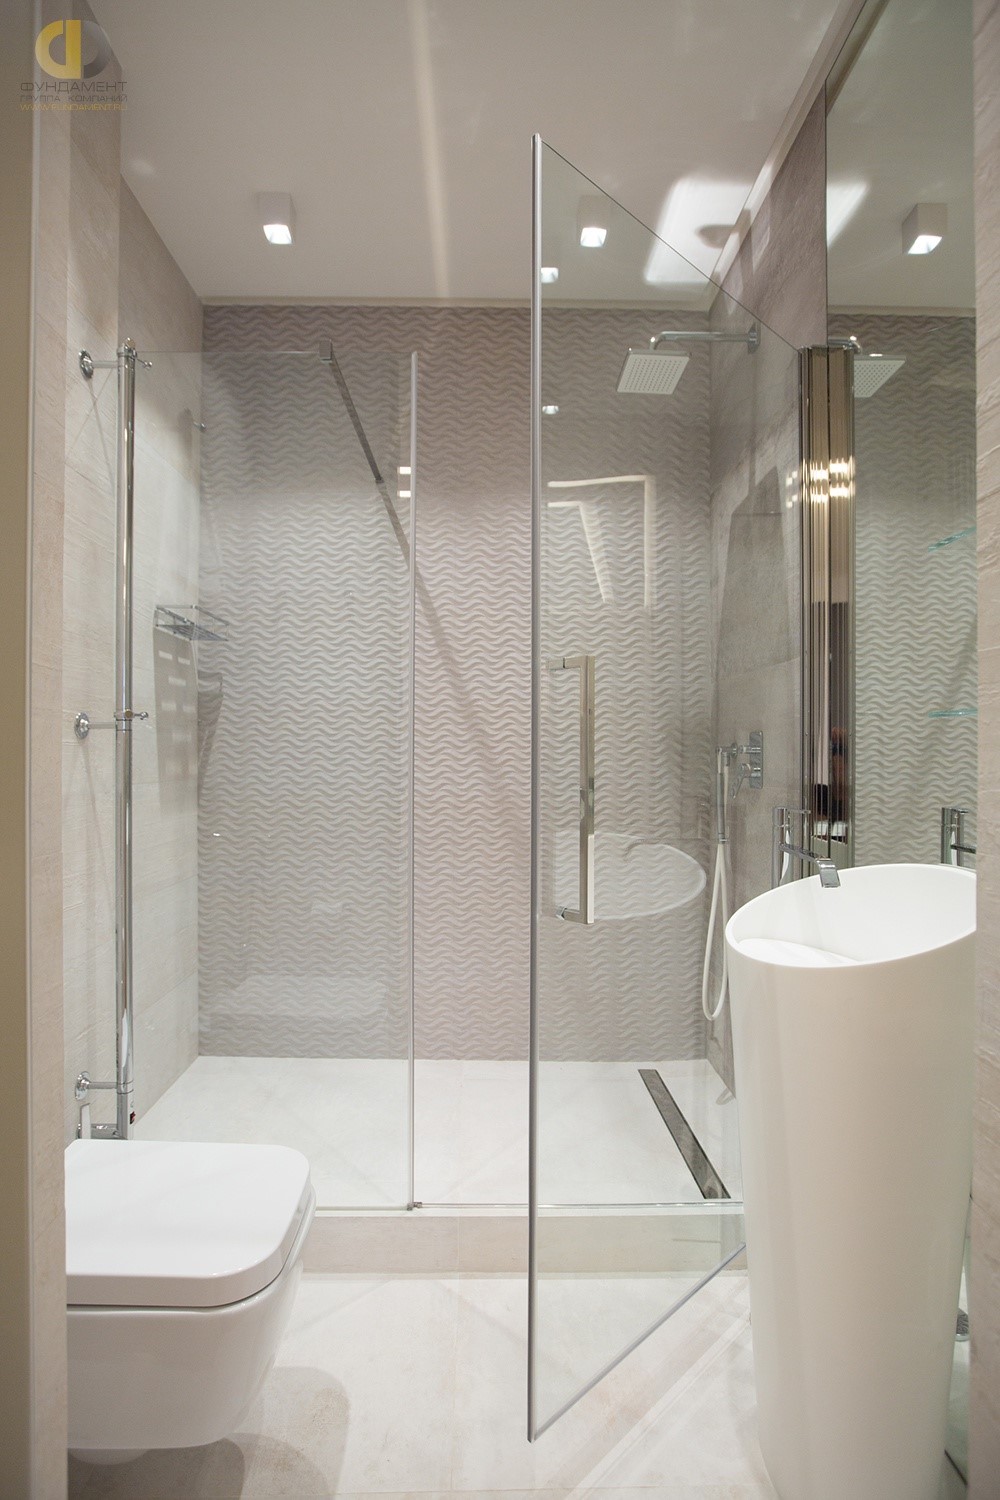 Современная ванная комната с минимальным комплектом оборудования